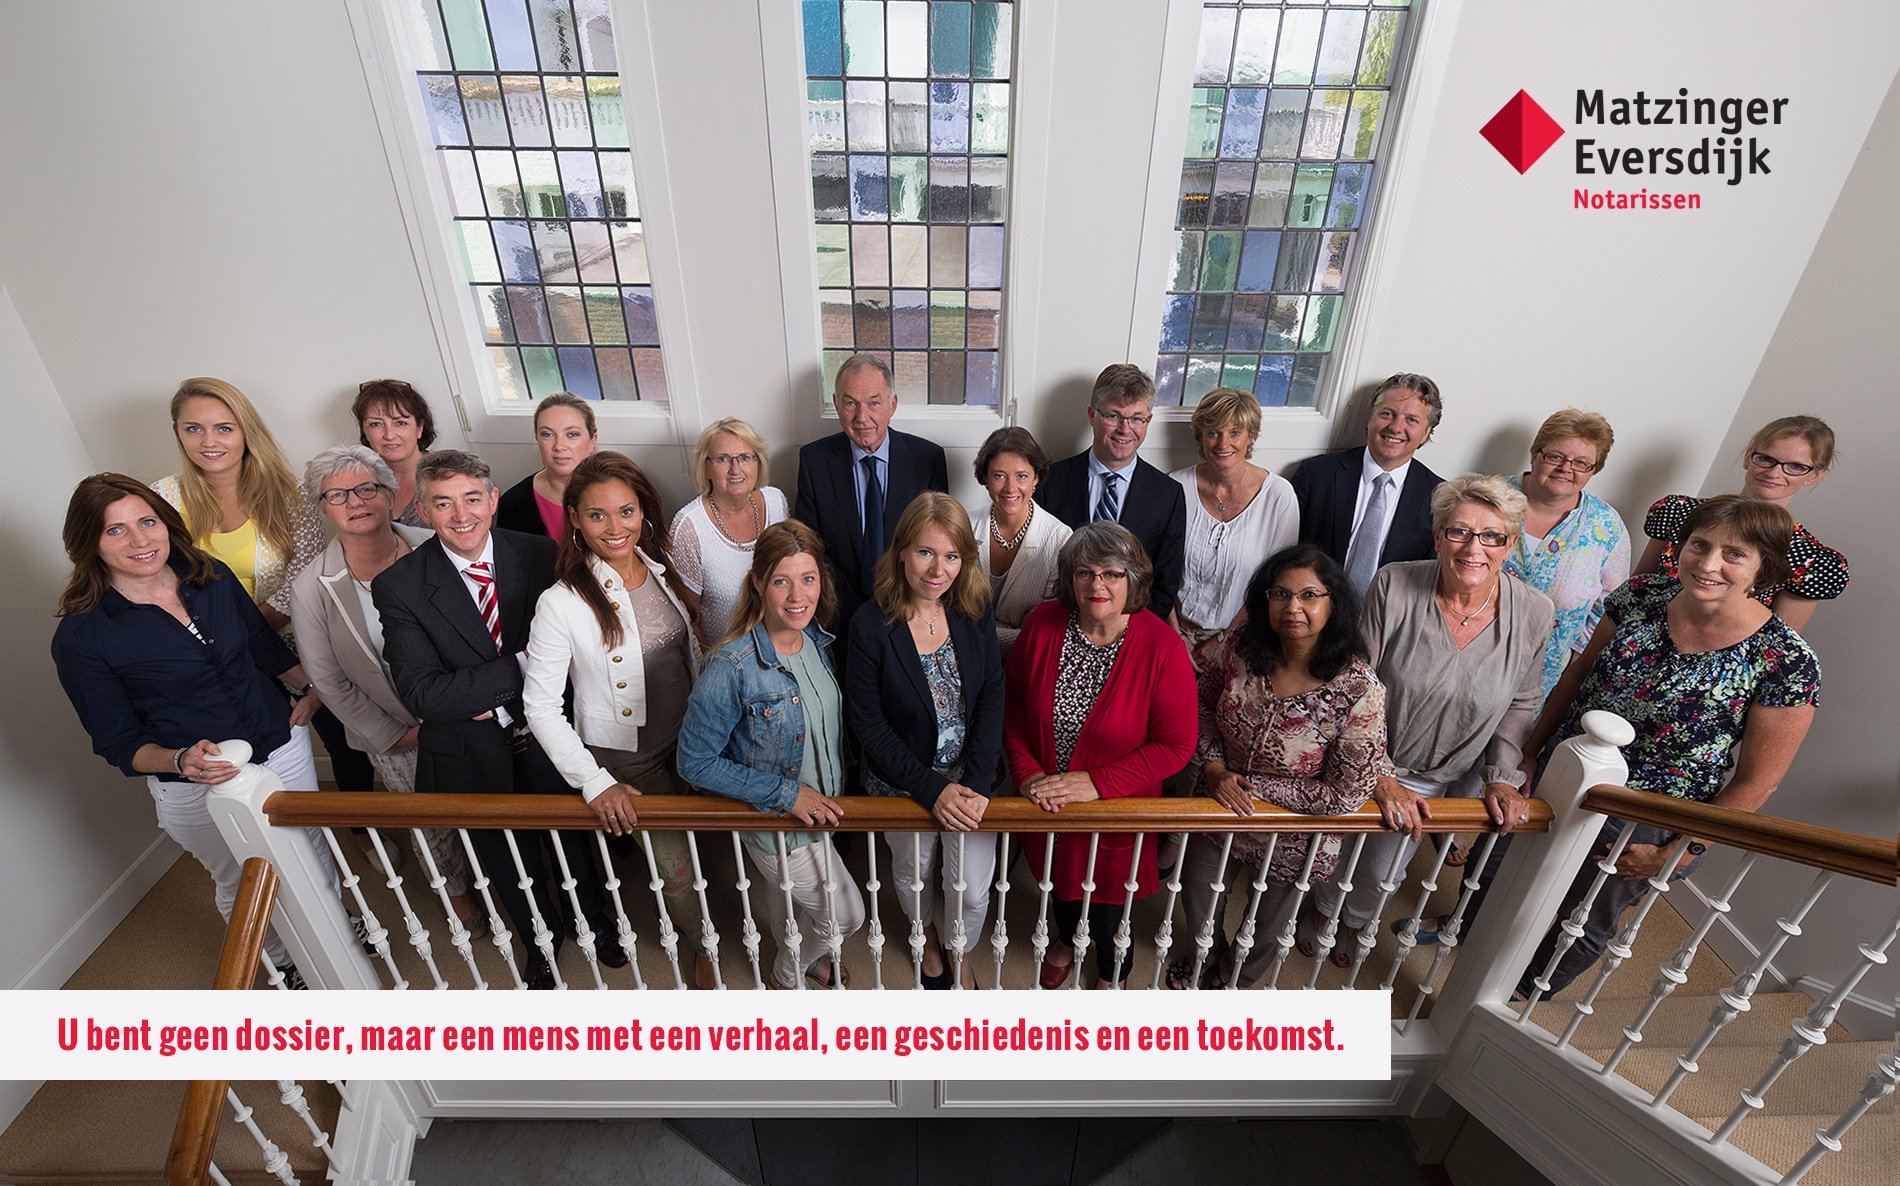 Een hecht team met specialisten ondersteunt de perfecte notariservaring bij Matzinger Eversdijk Notarissen!